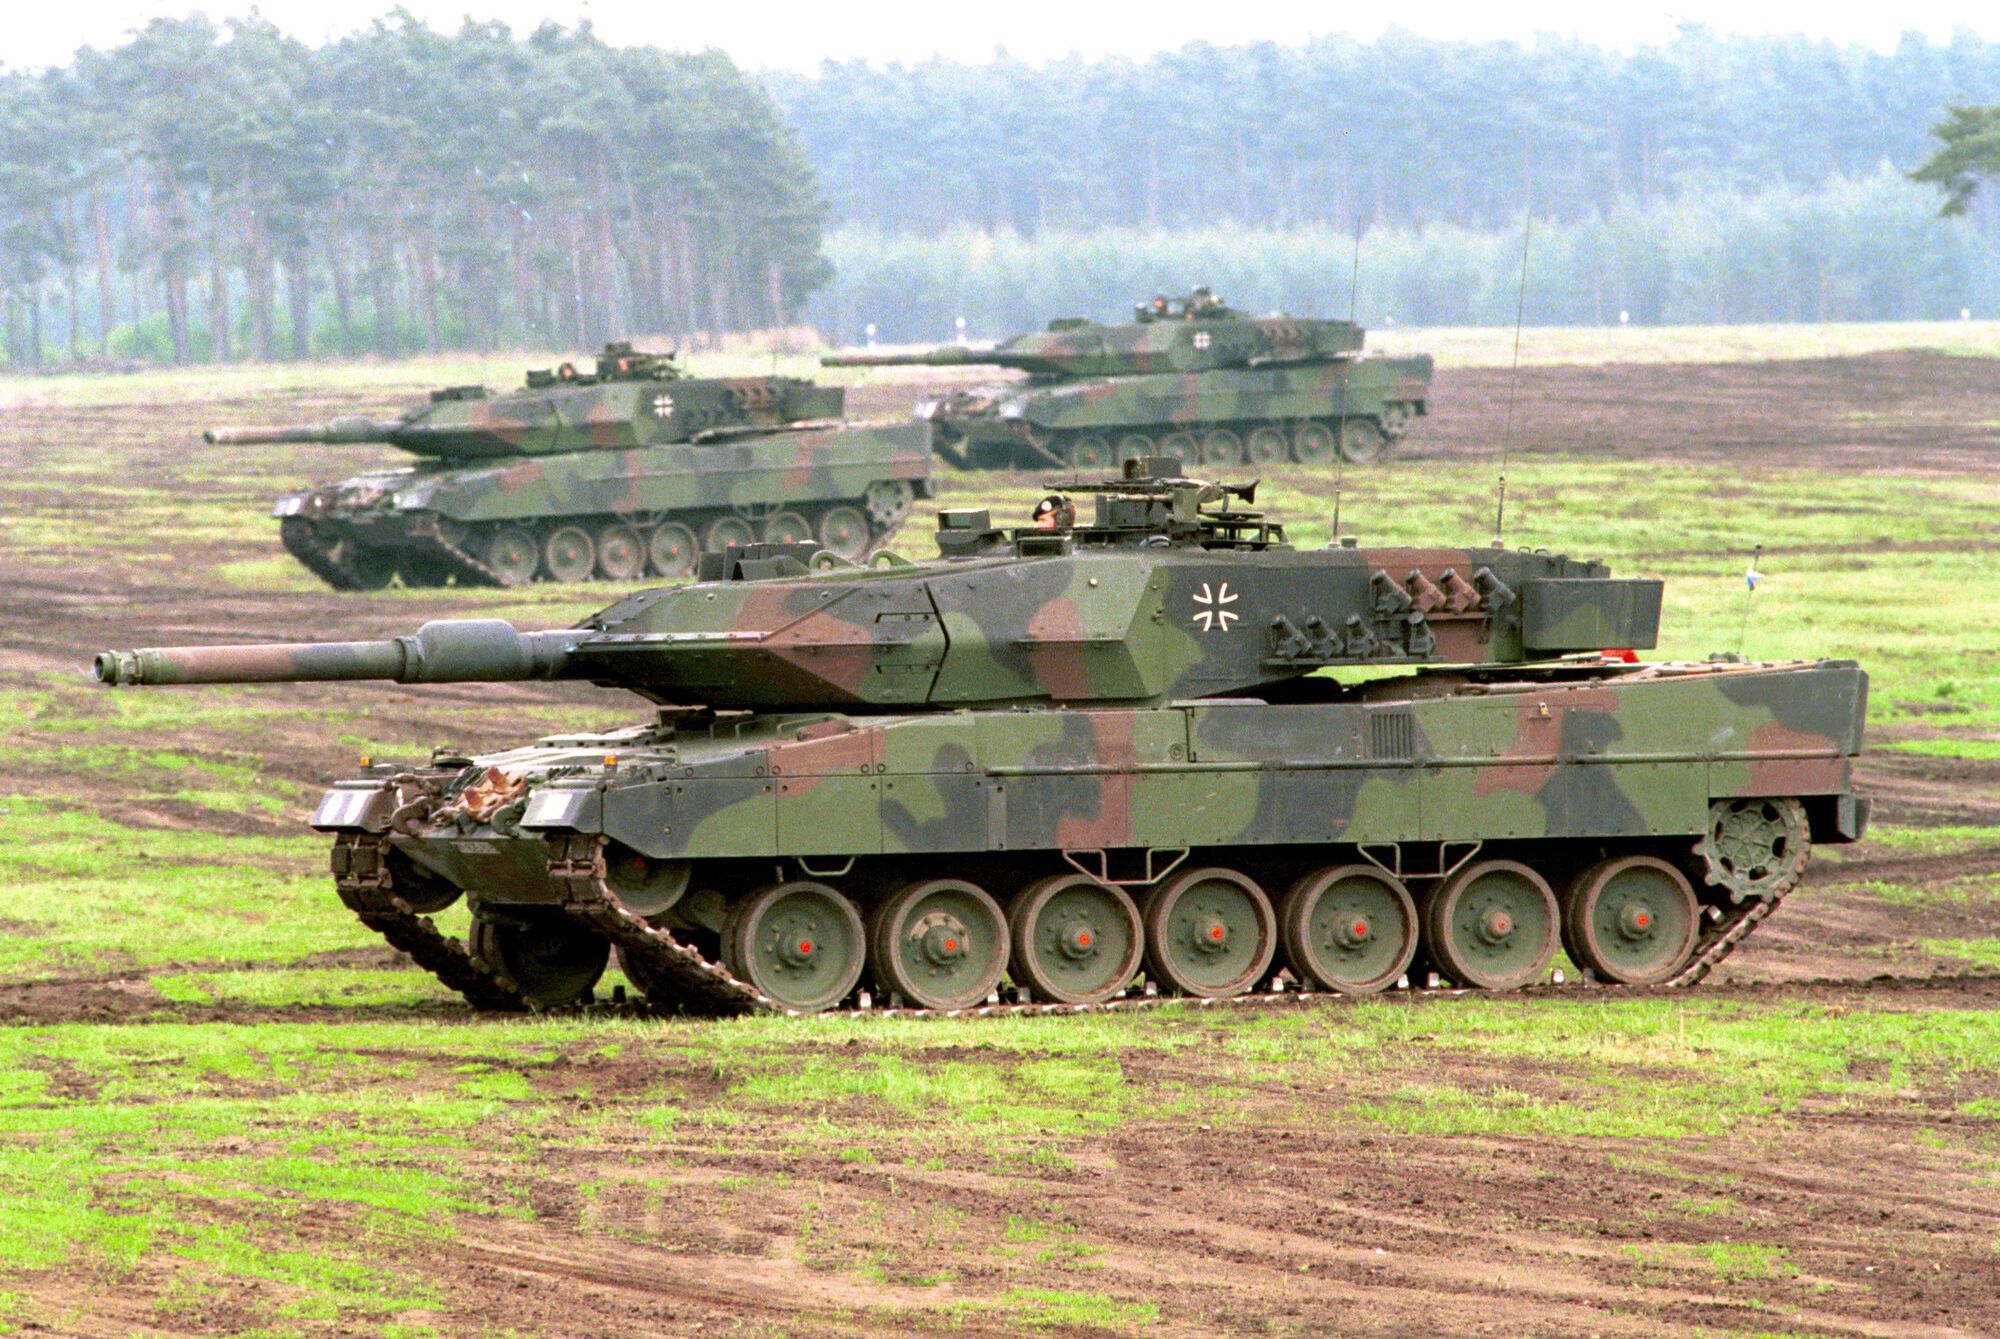 Оружие Украины: почему "Оплот" один из трех лучших танков в мире - наглядное сравнение